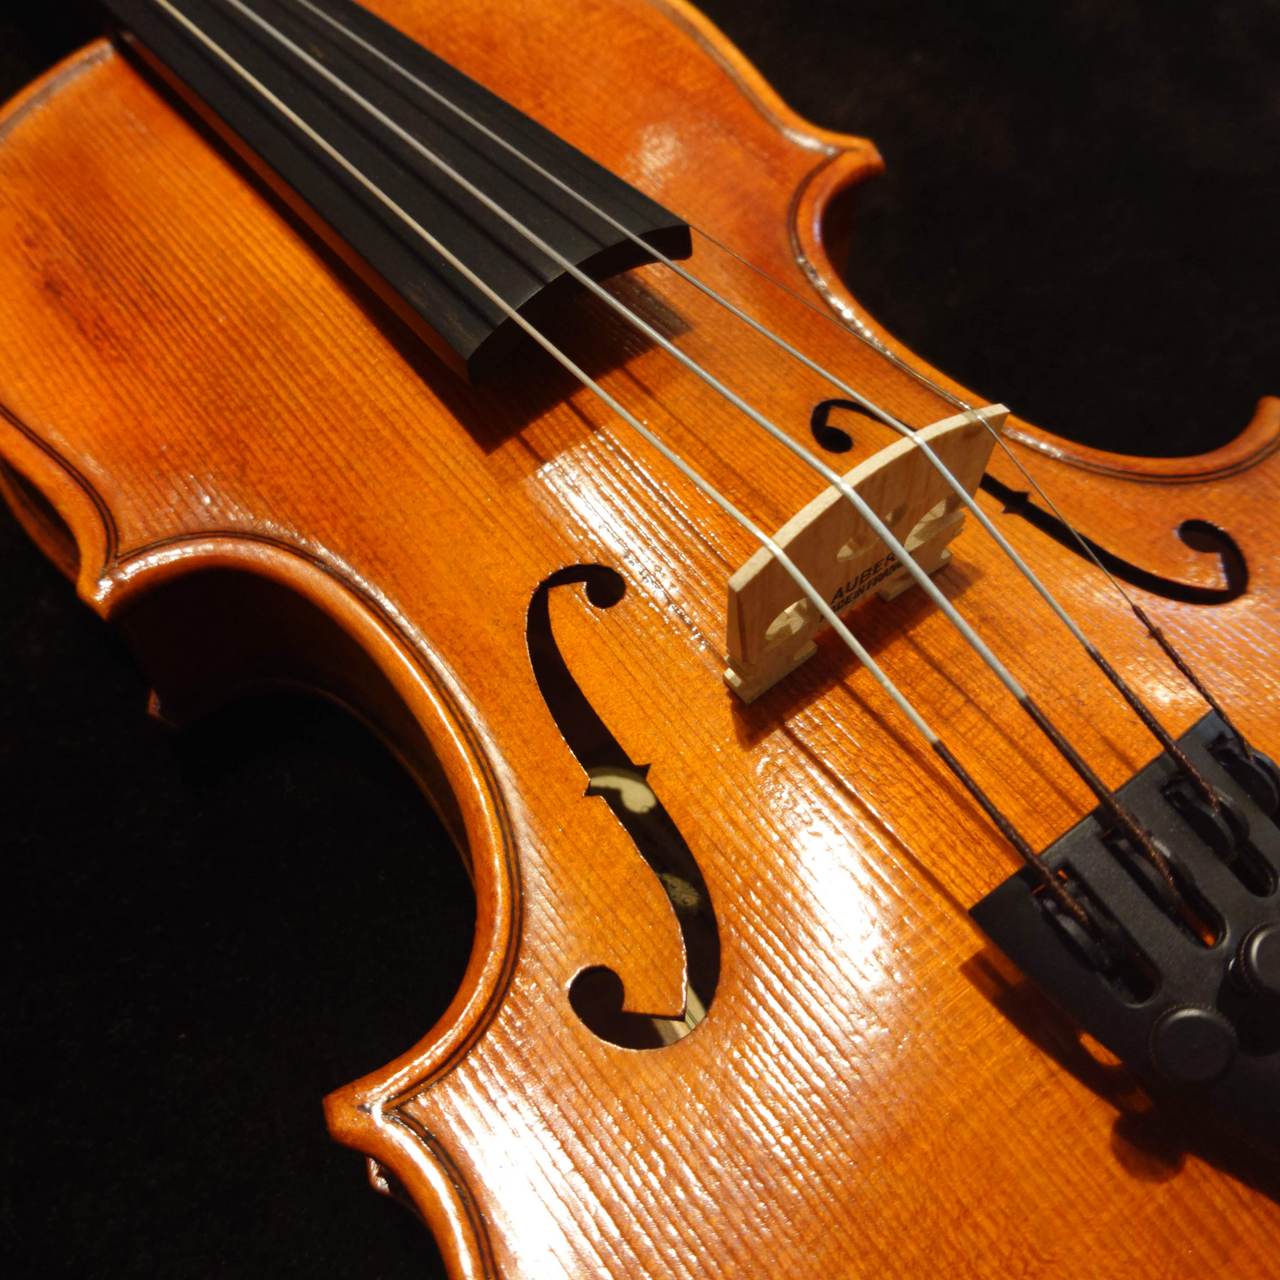 Nicolo Santi (ニコロ・サンティ)バイオリンセット NSN60S 1/8サイズ 